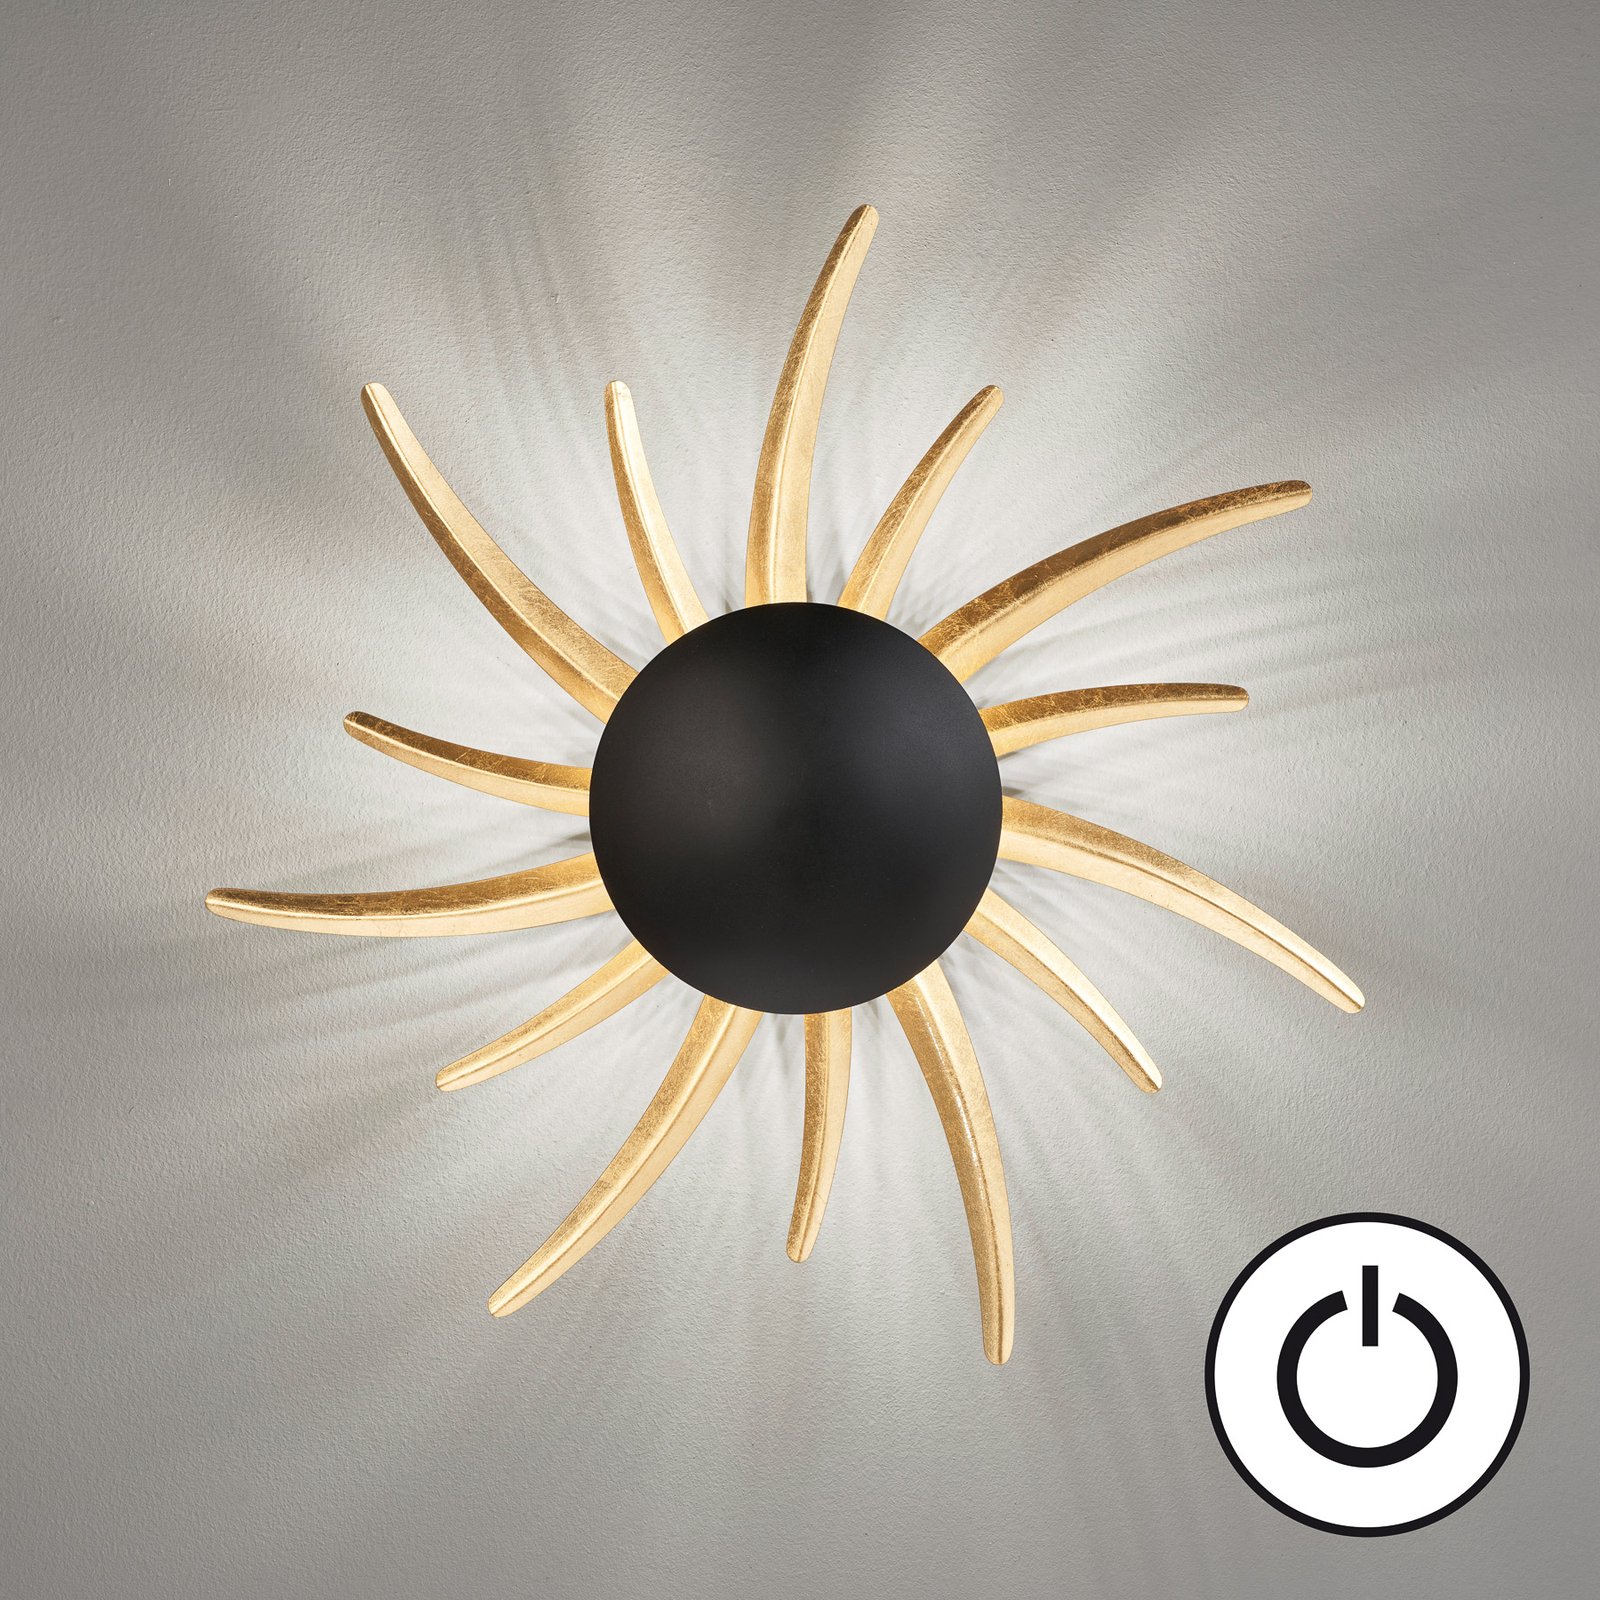 Sol LED sieninis šviestuvas, juodas su auksiniais spinduliais